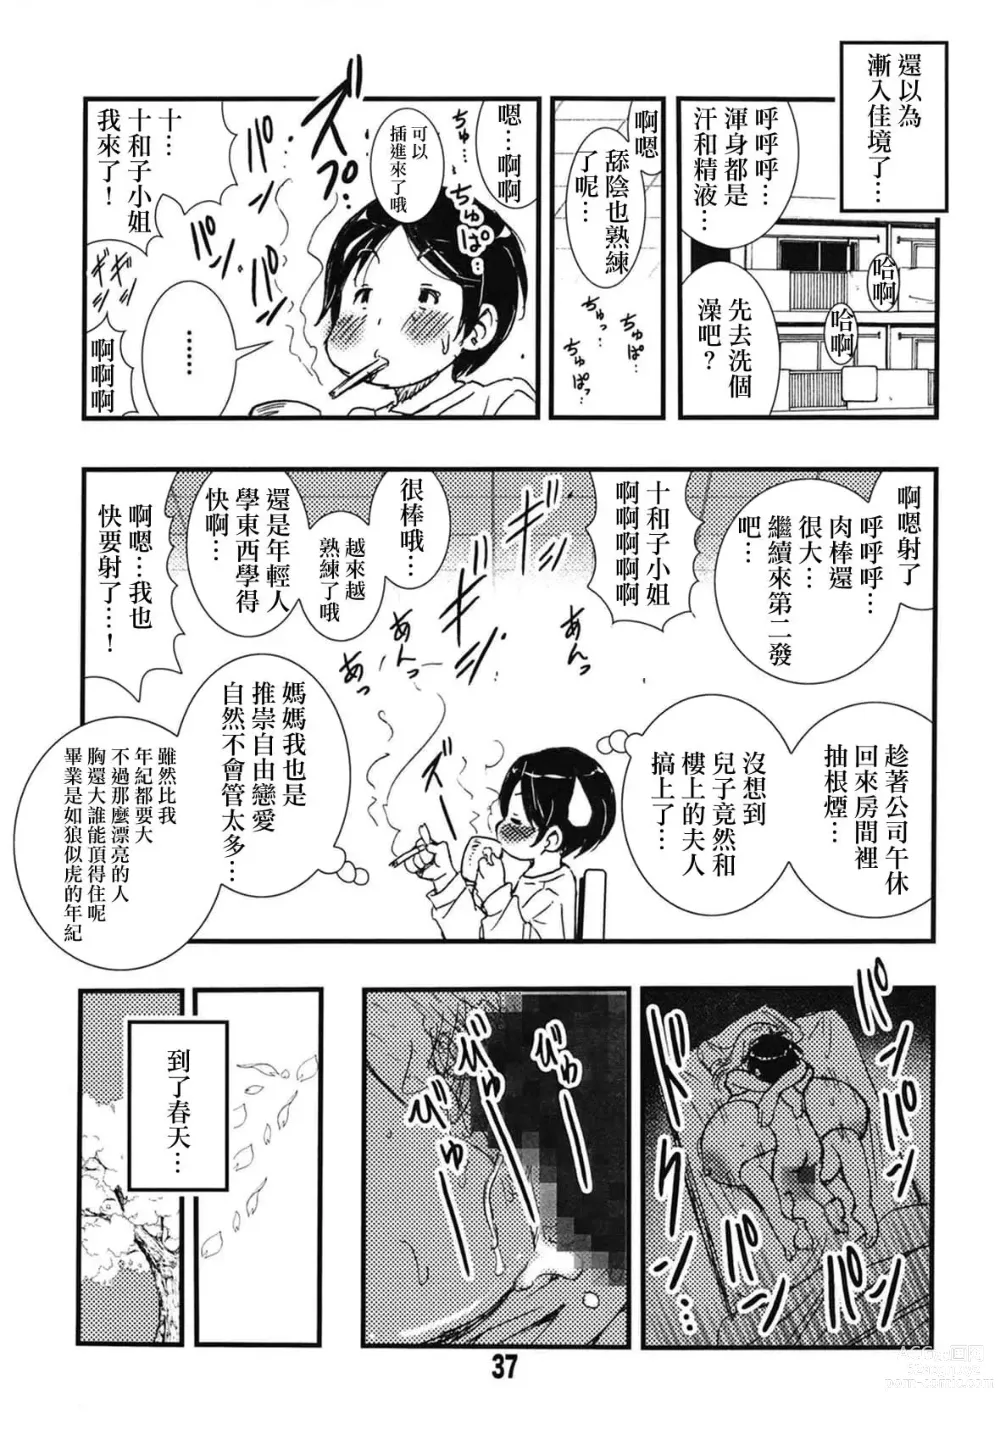 Page 34 of doujinshi 56-sai Bust 256cm Danchizuma Ookiku Tareta Jukujo no Chibusa... Boku wa Kono Hito de Doutei o Sotsugyou Shita.